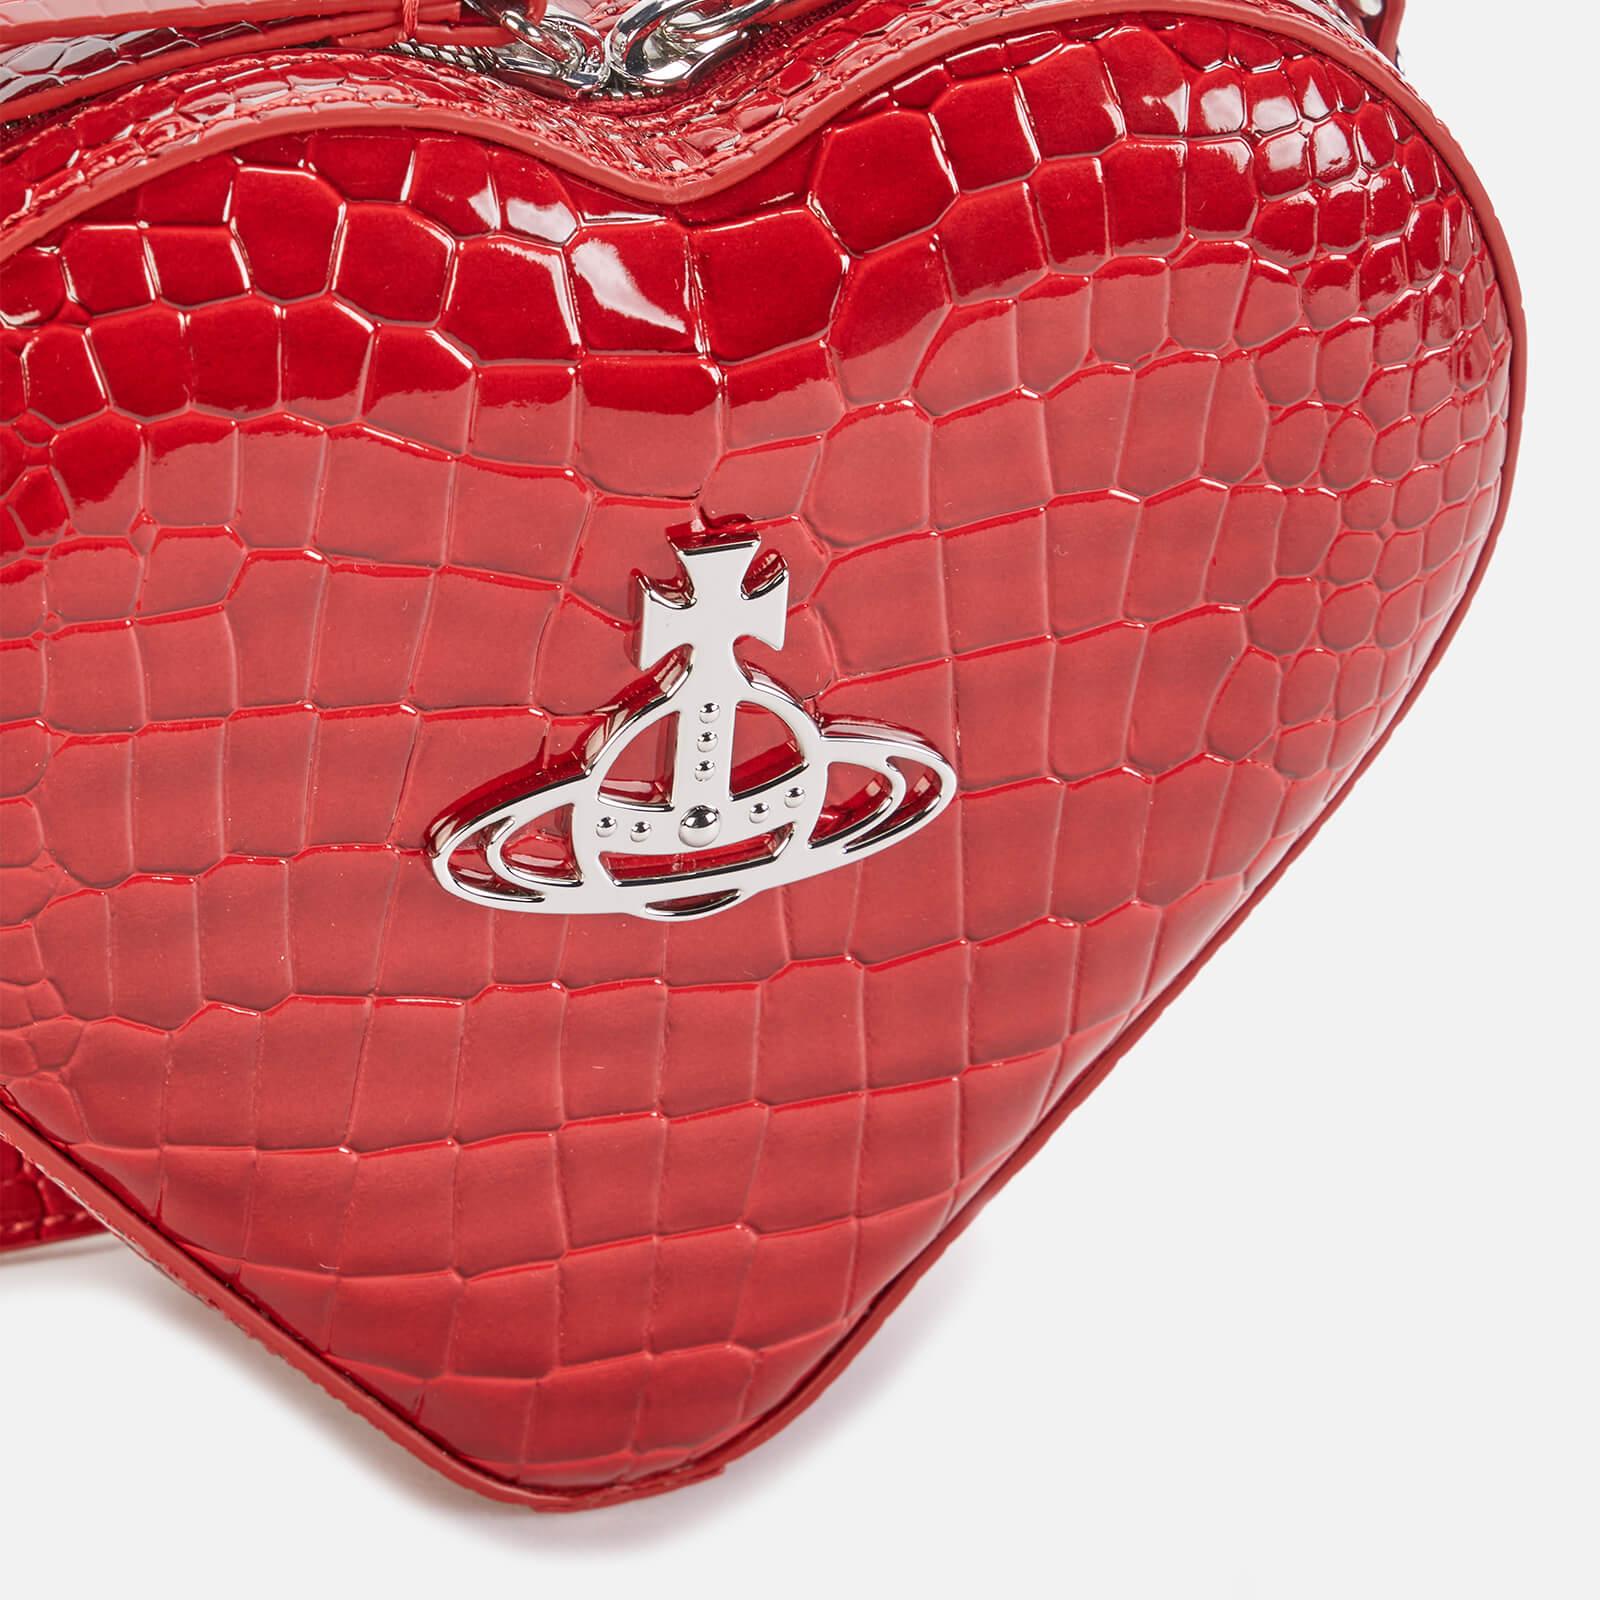 Vivienne Westwood Ella Heart Cross Body Bag in Red